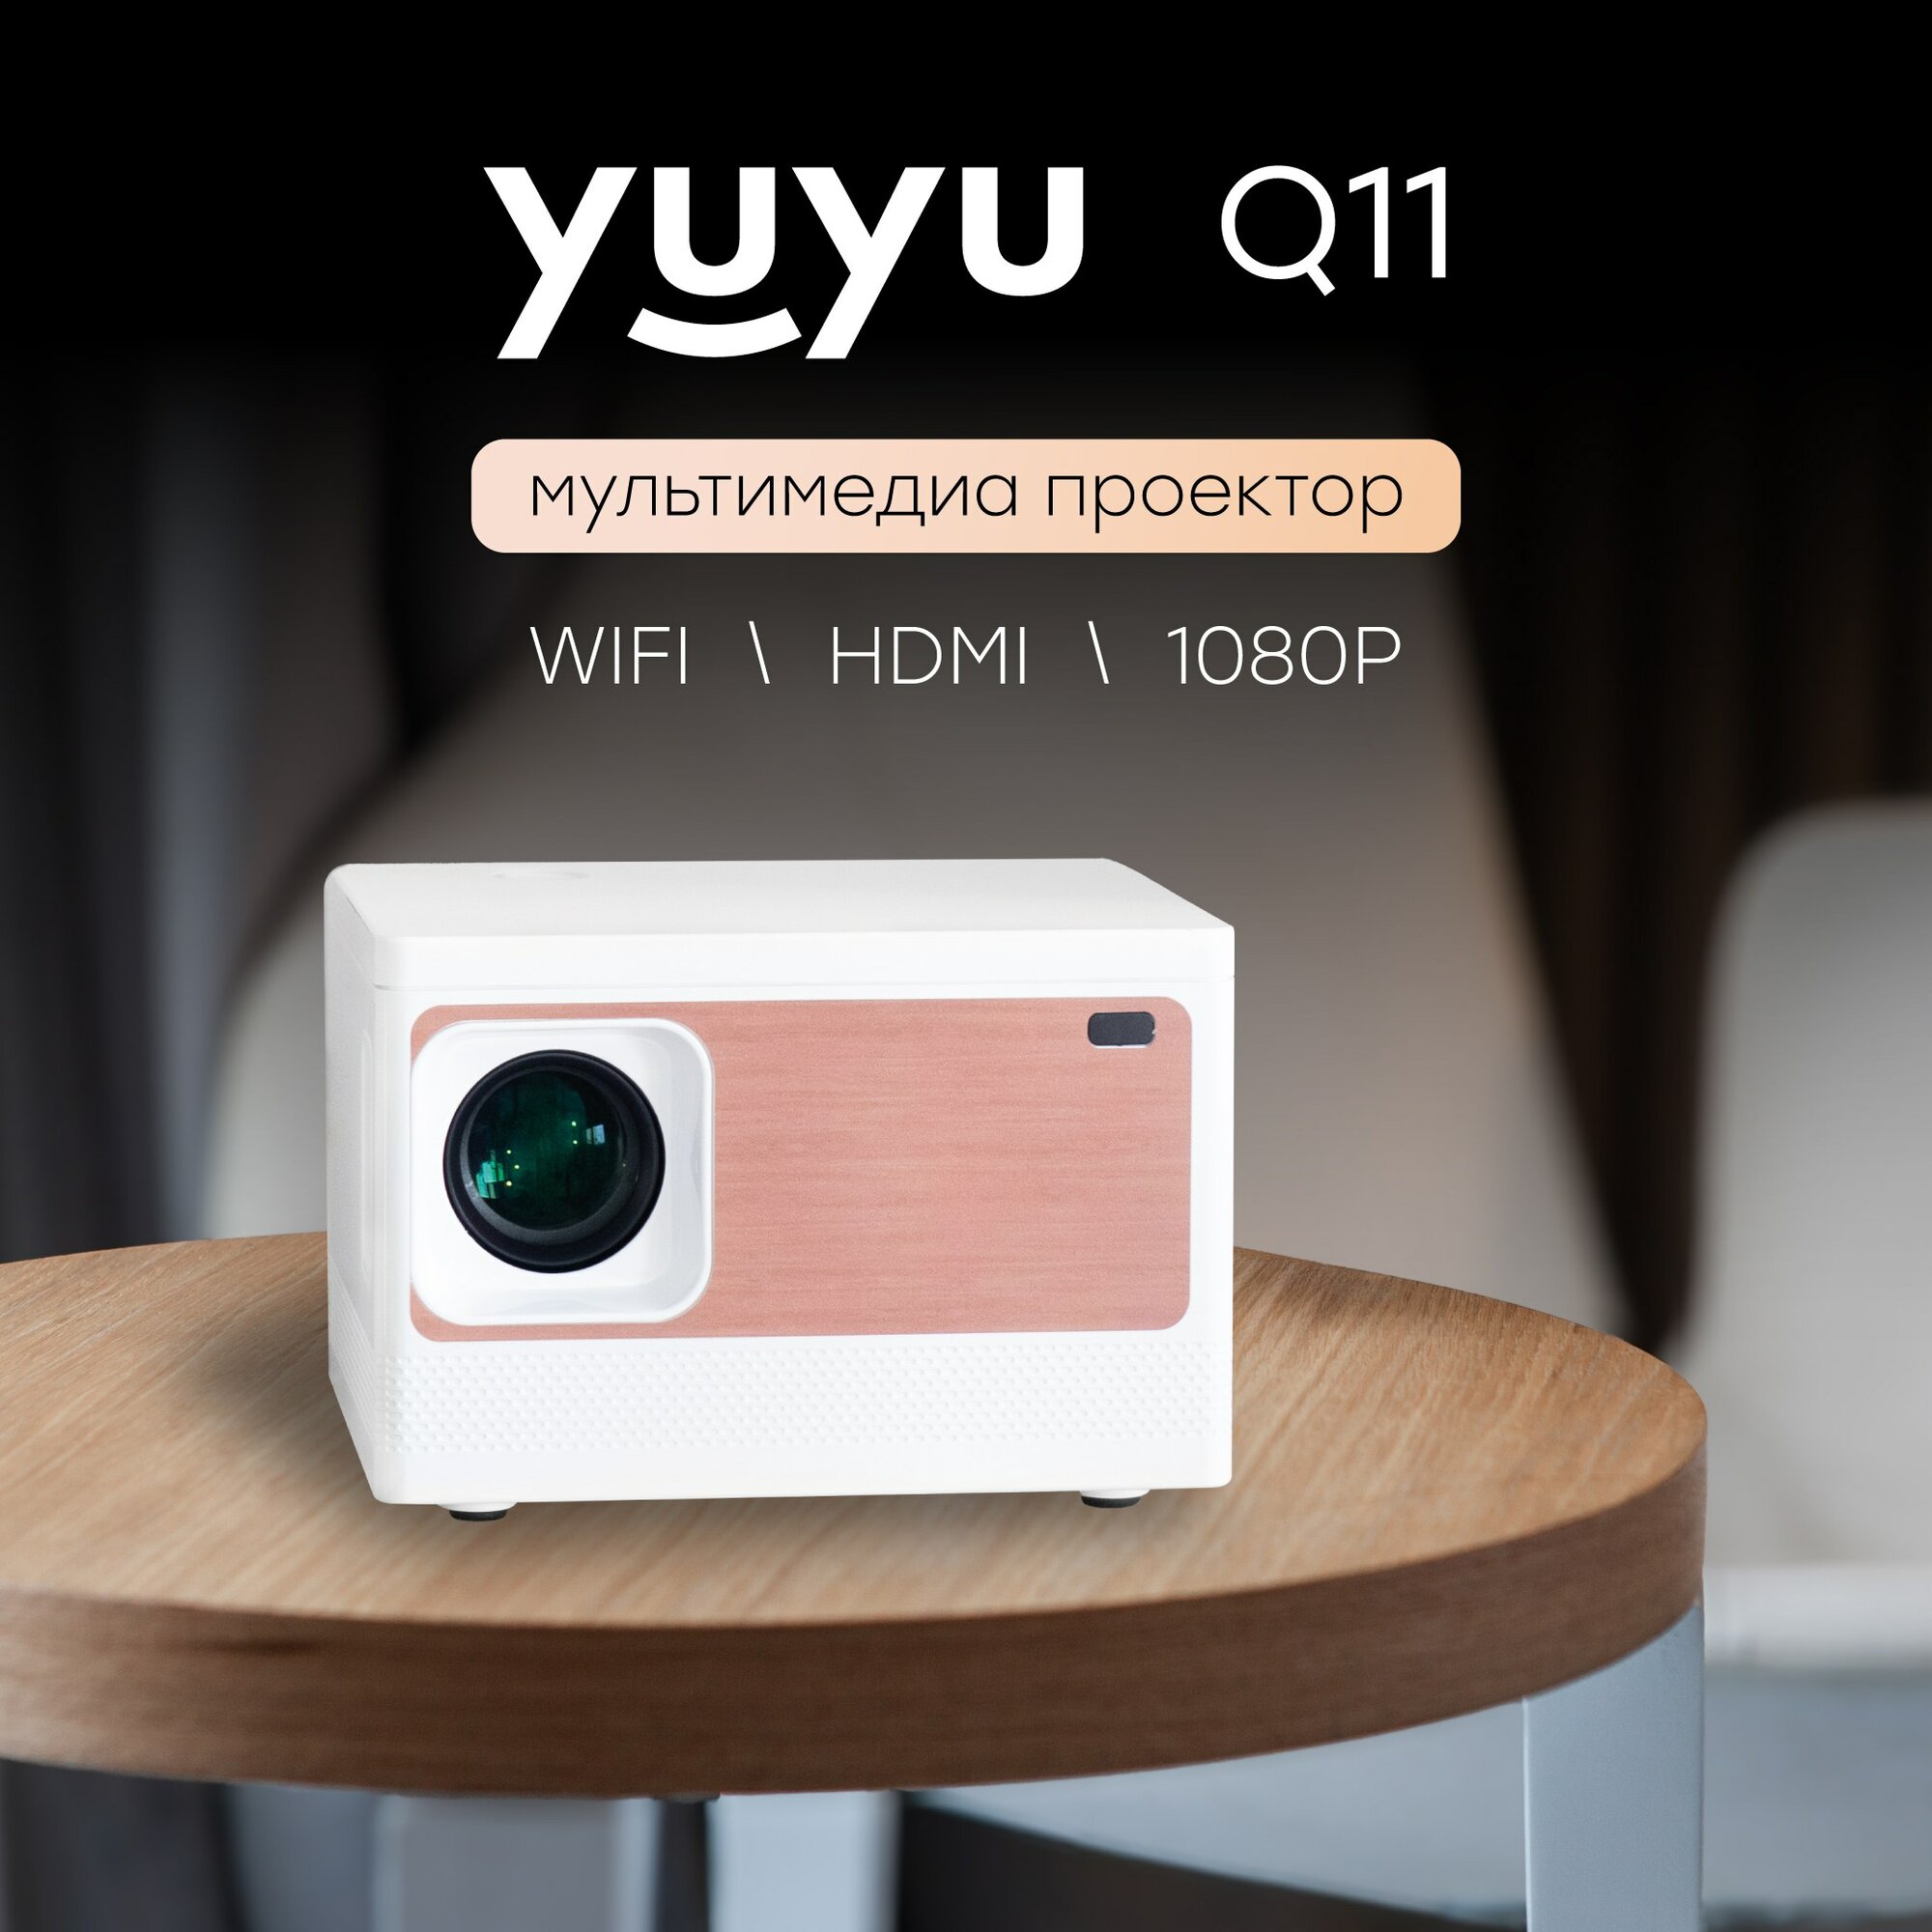 Проектор мультимедийный на системе Андройд Android Wi-Fi Кино проектор проектор для фильмов мини проектор YuYu